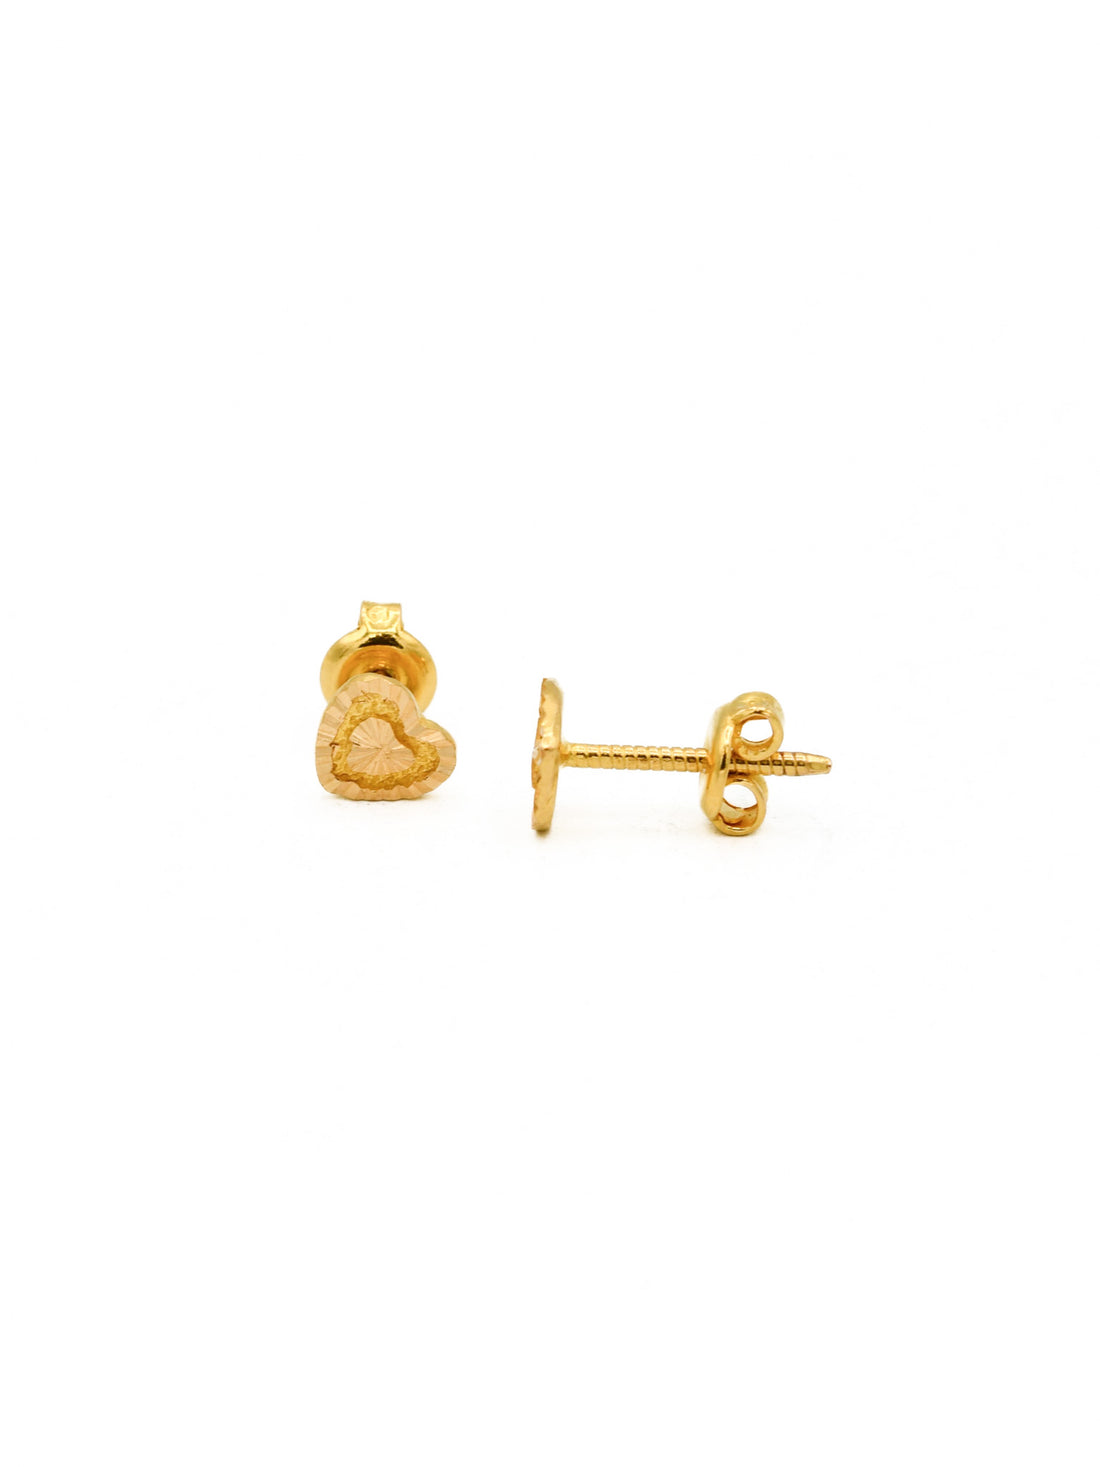 22ct Gold Heart Stud Earrings